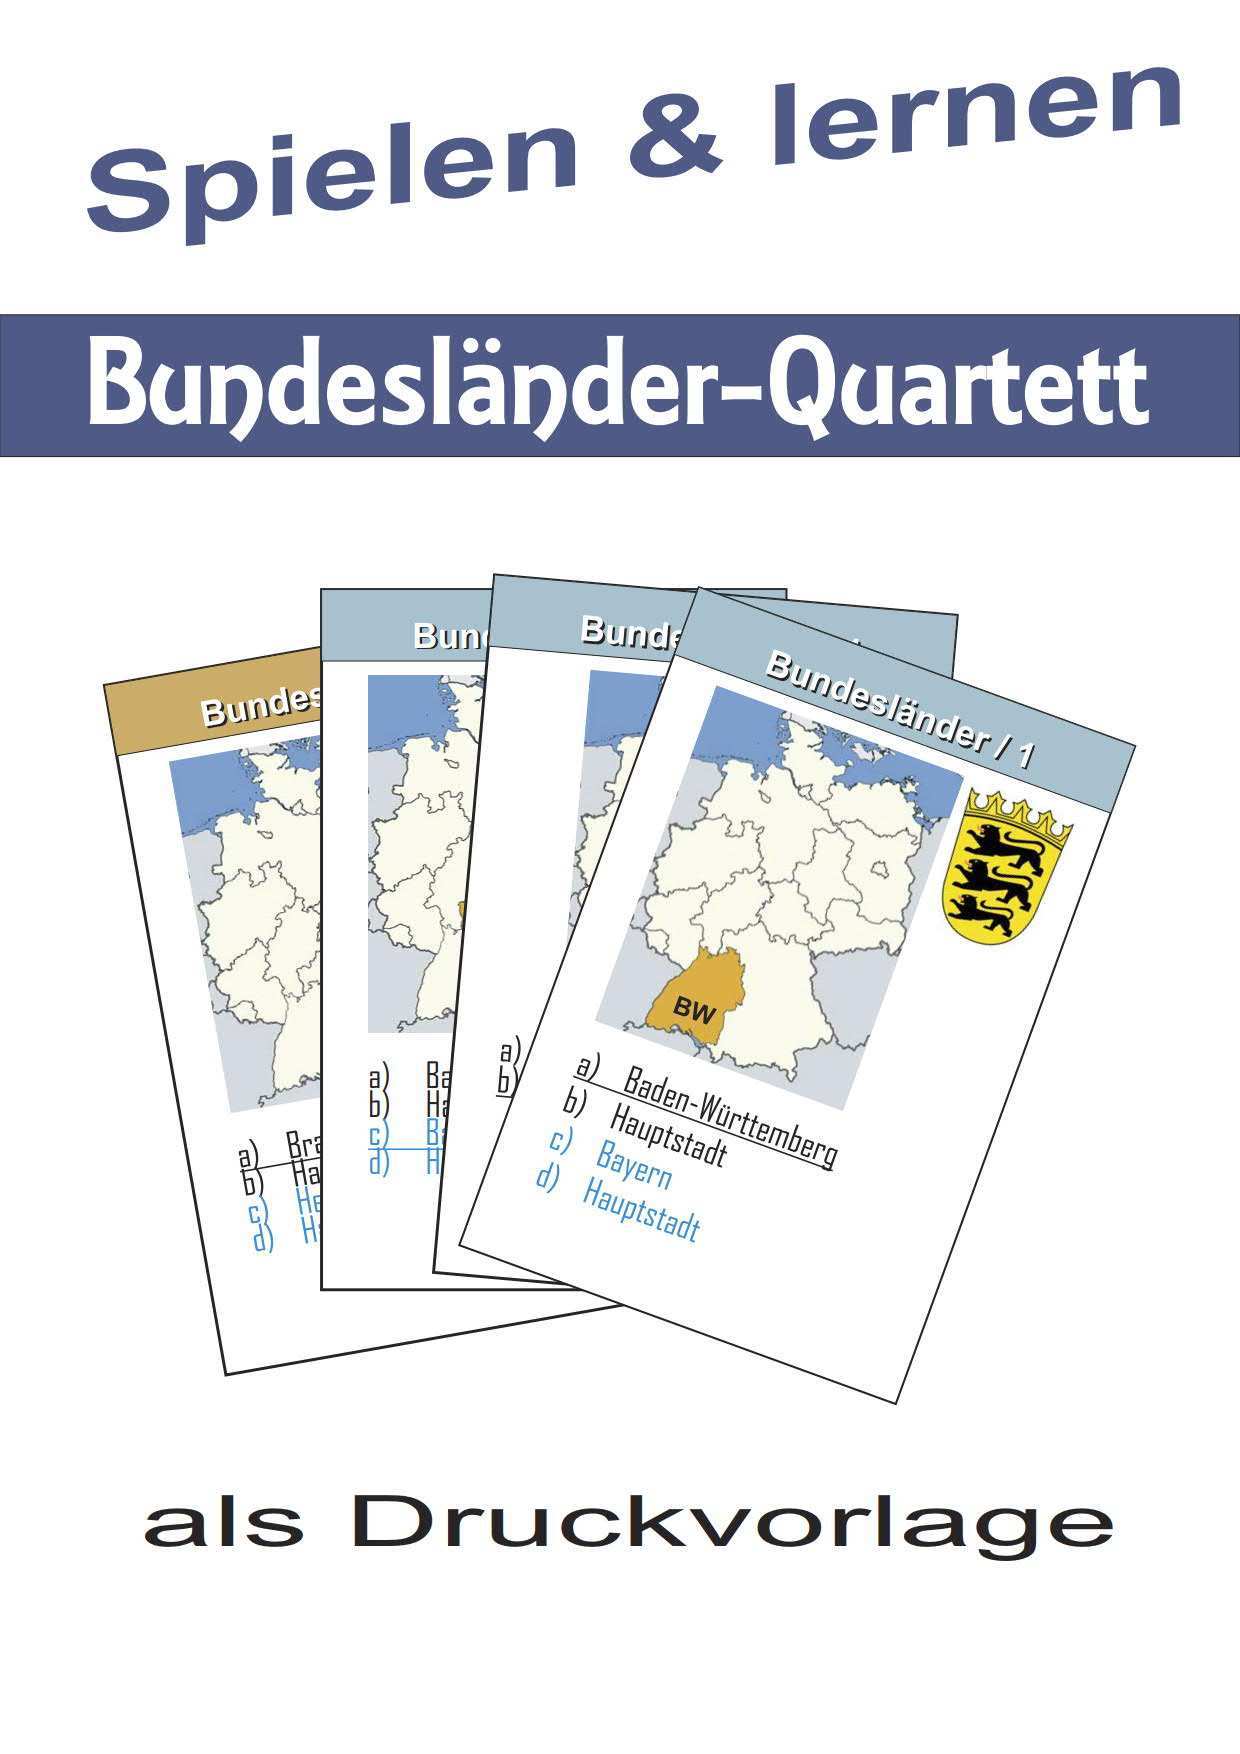 Bundeslander Quartett